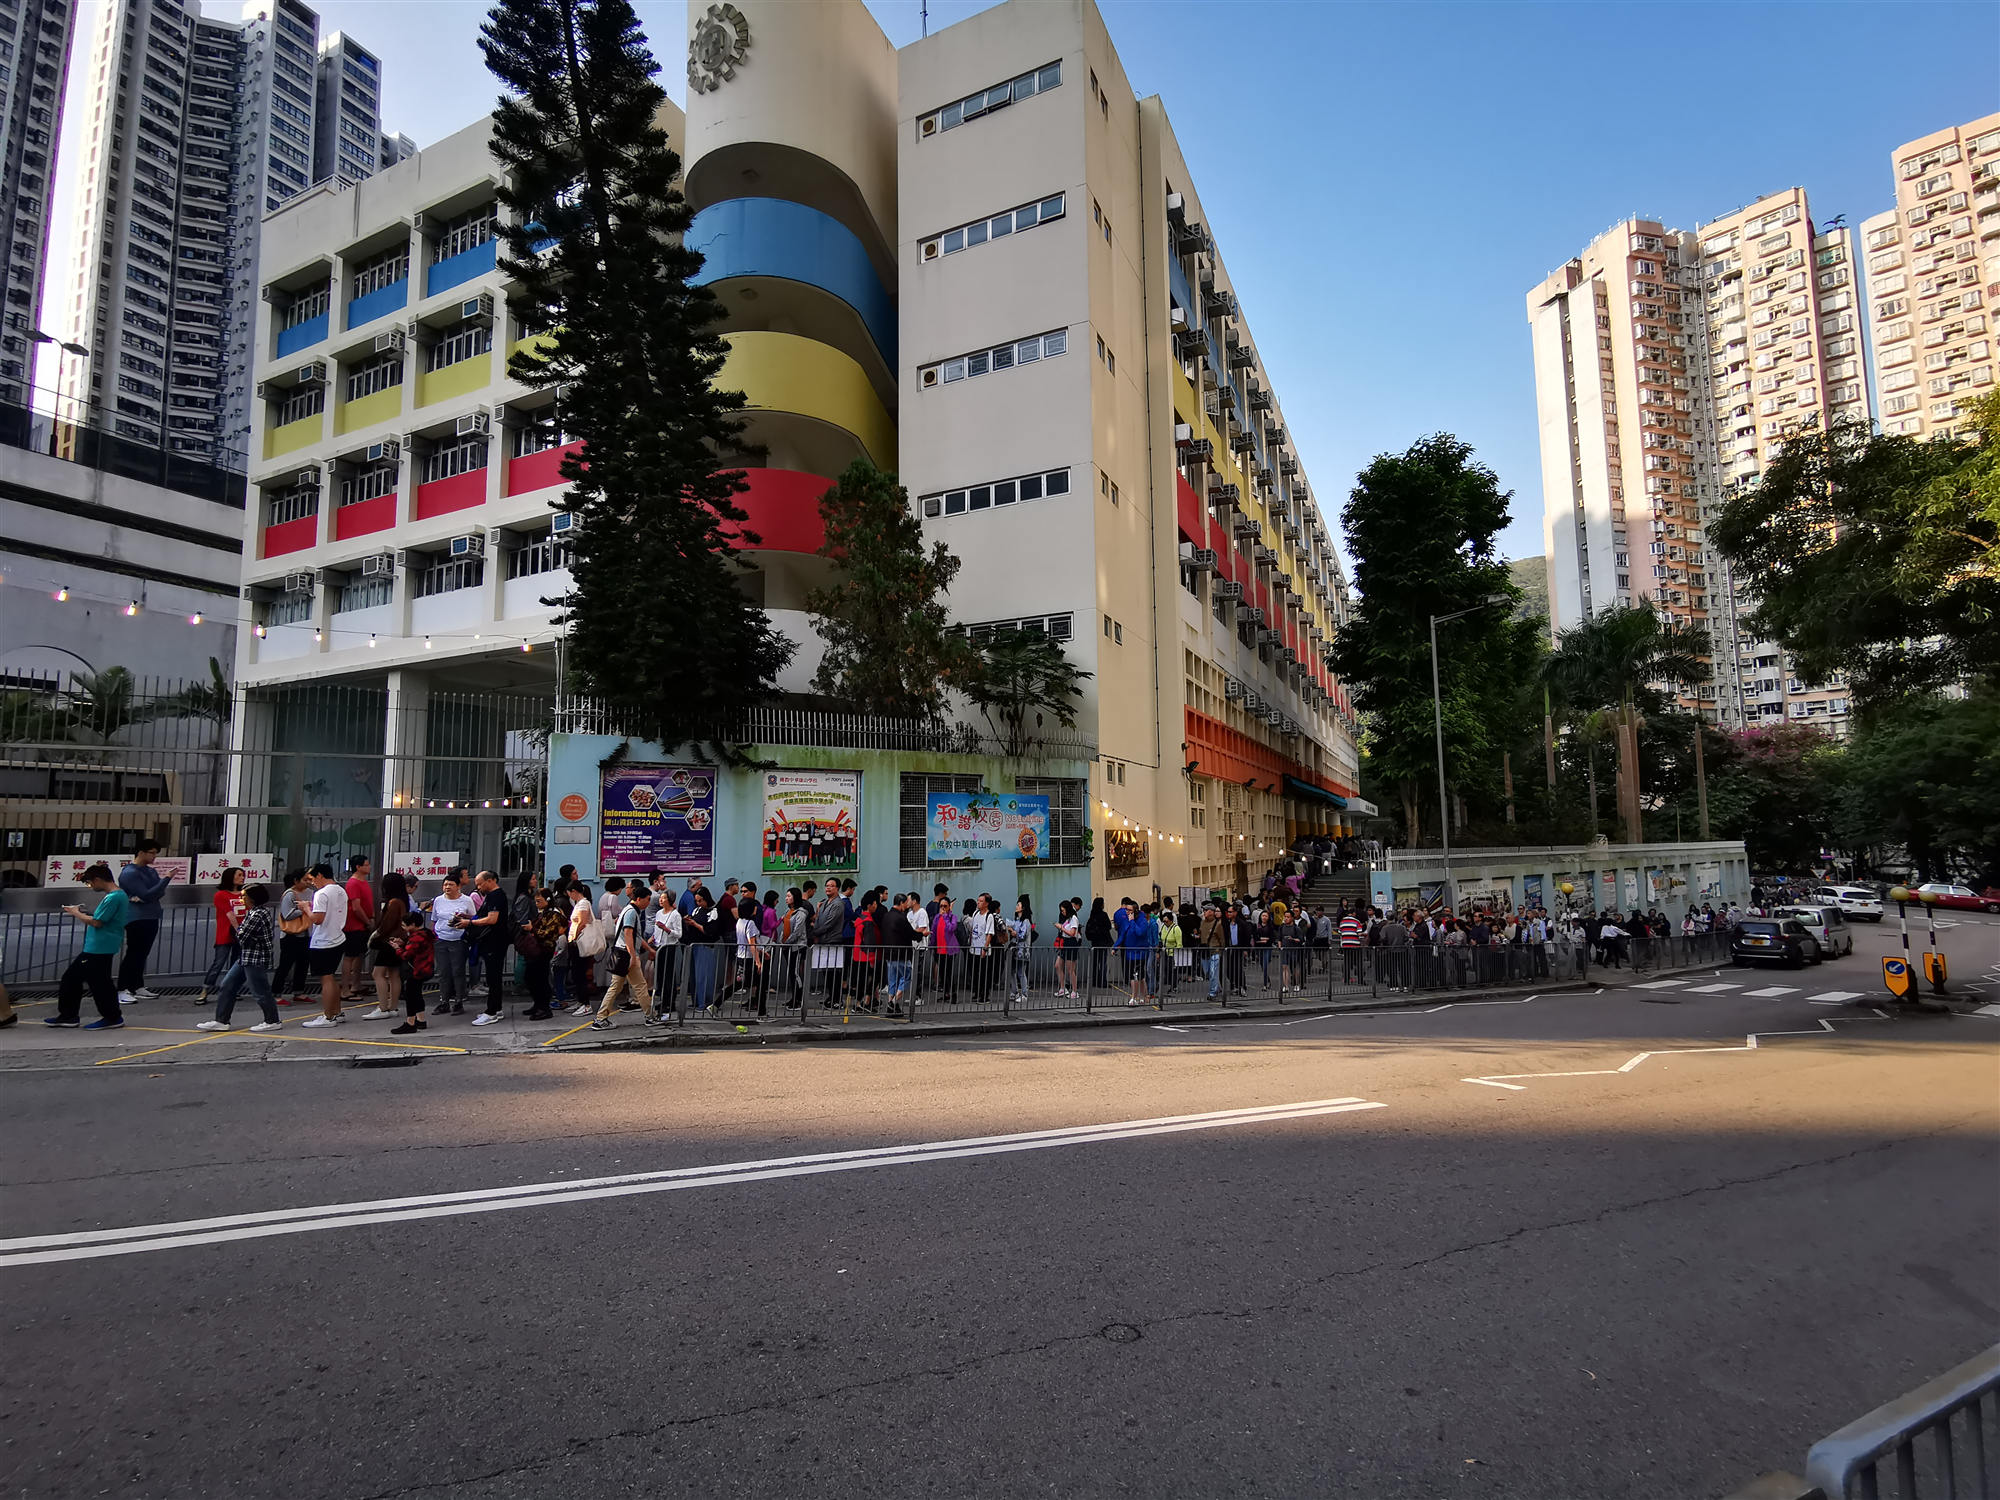 圖文直播| 2019香港區議會選舉直擊